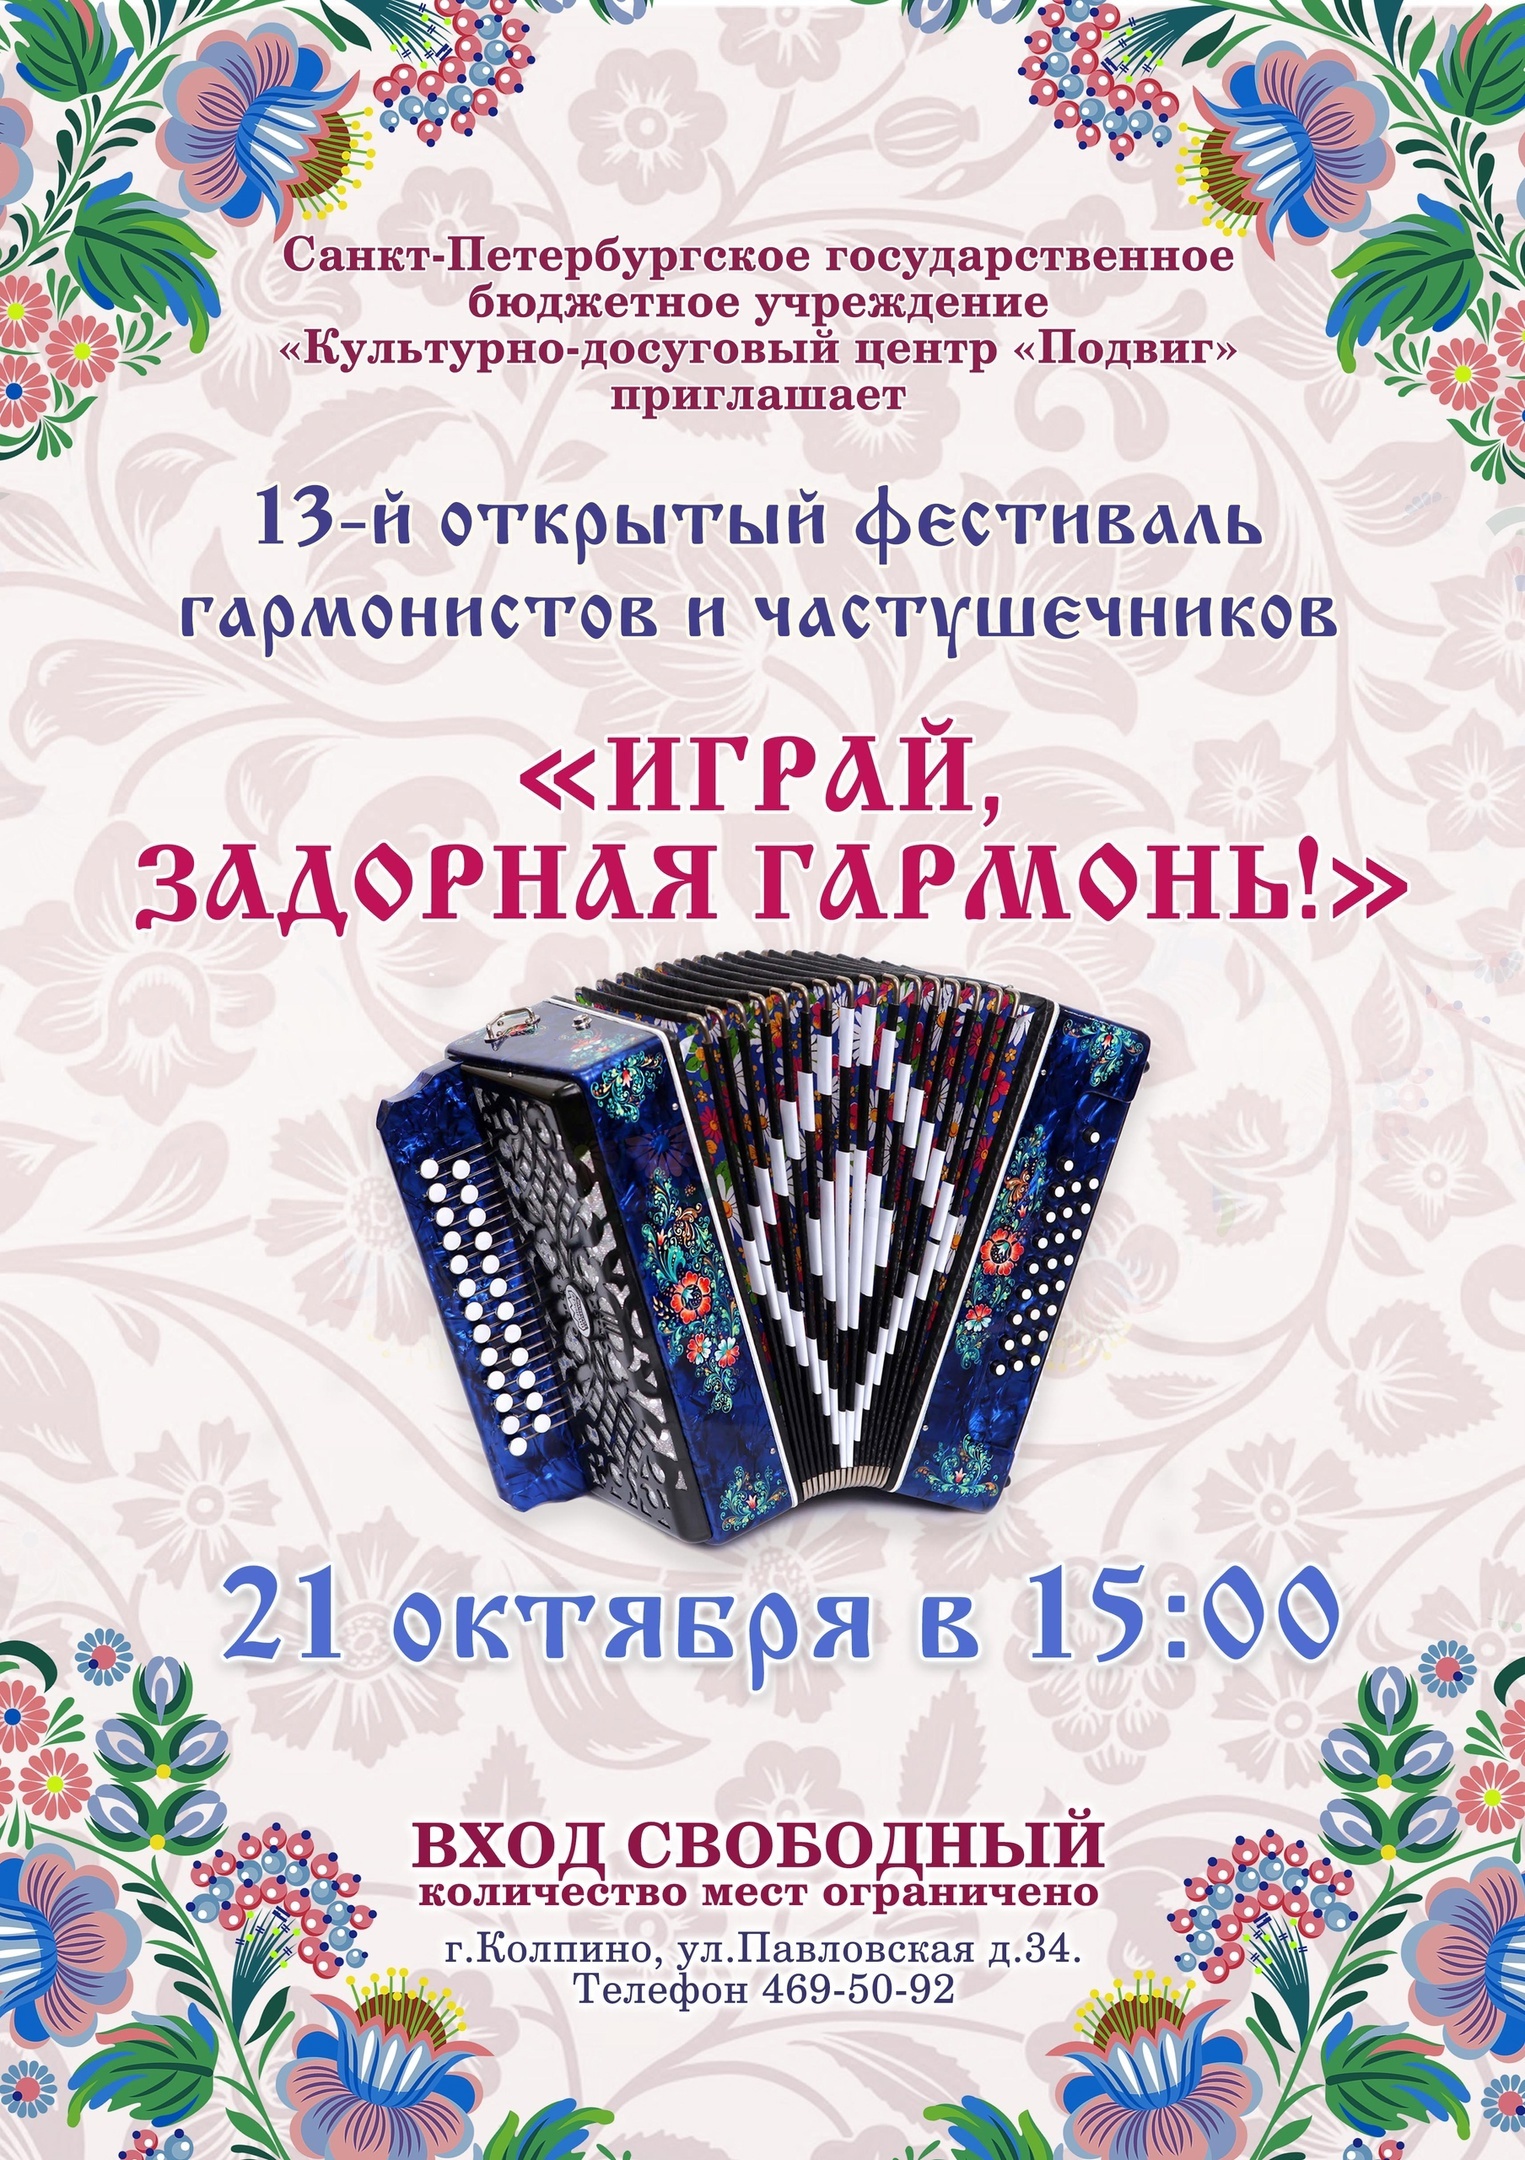 21 октября в 15:00 в культурно-досуговом центре "Подвиг" состоится XIII открытый фестиваль гармонистов и частушечников "Играй, задорная гармонь!".